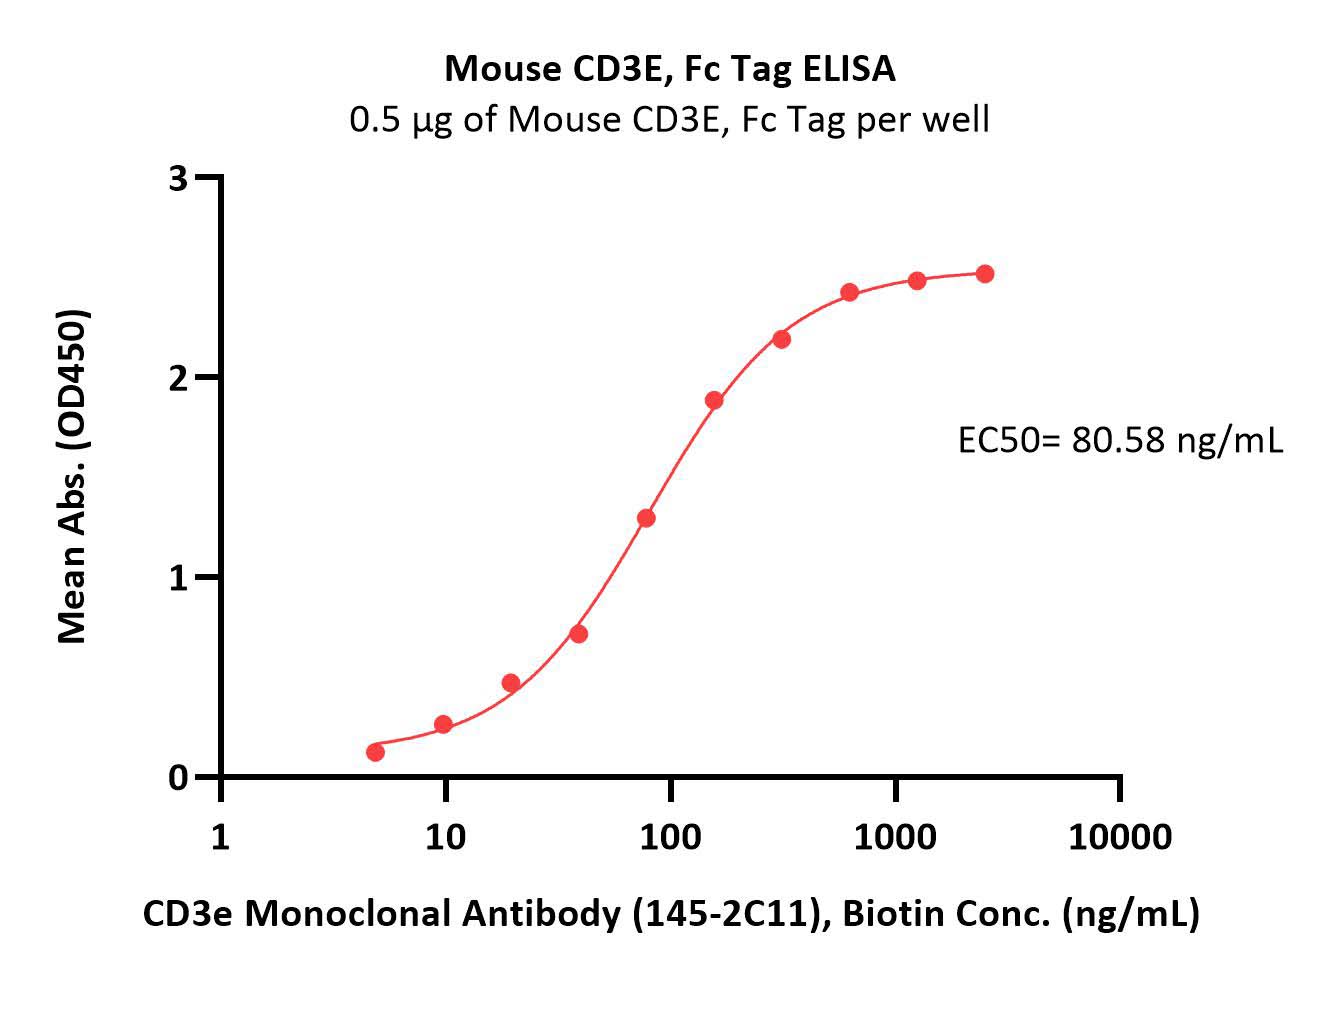 CD3 epsilon ELISA